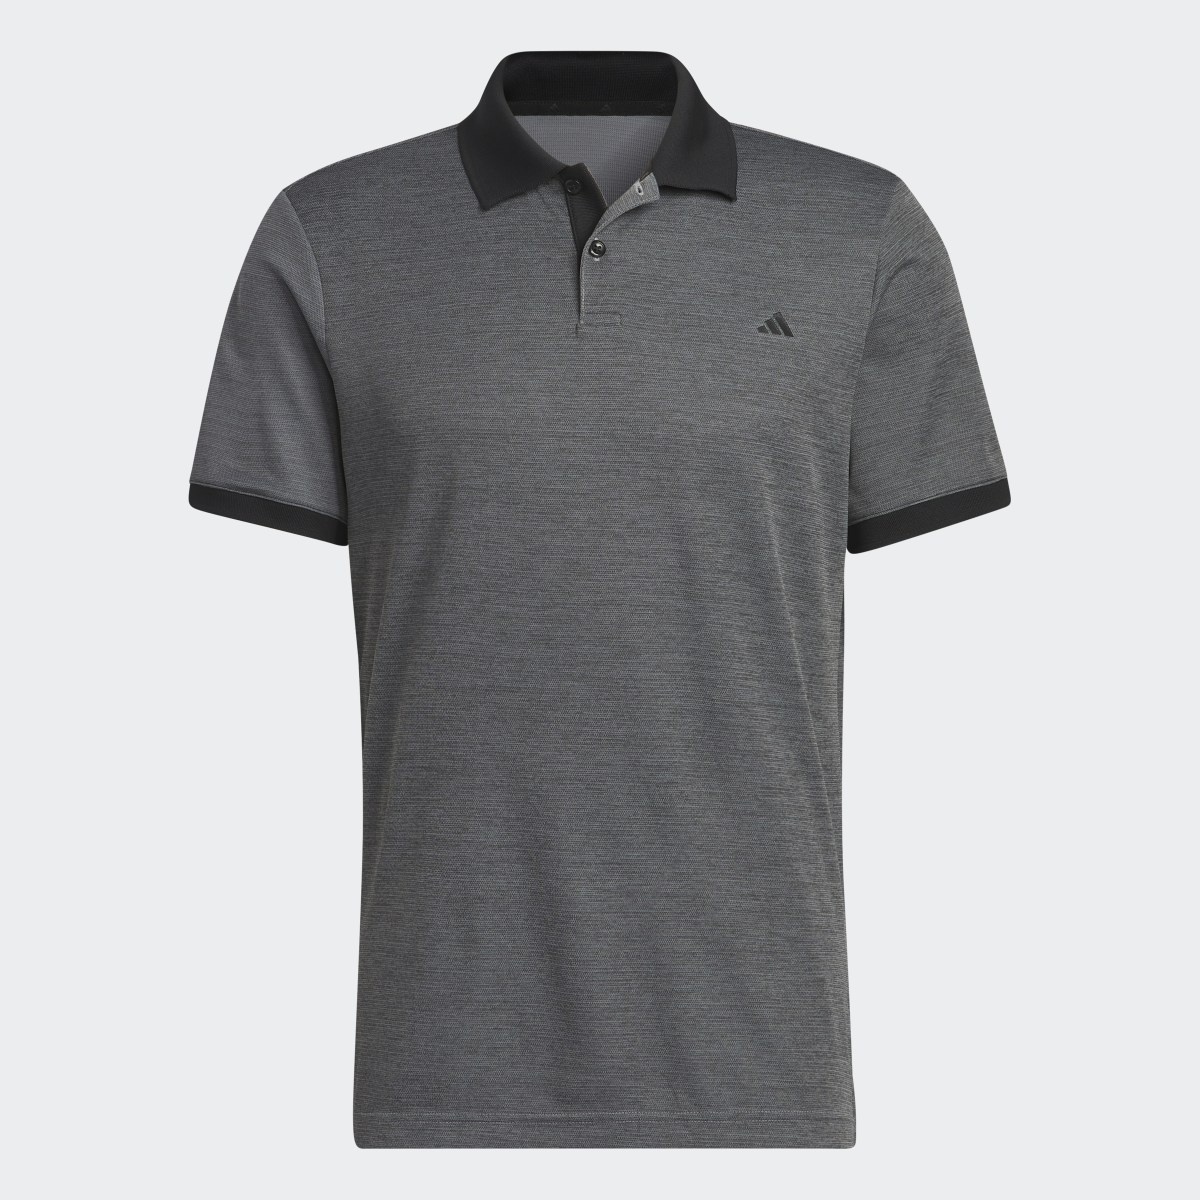 Adidas Ultimate365 No-Show Golf Polo Shirt. 5